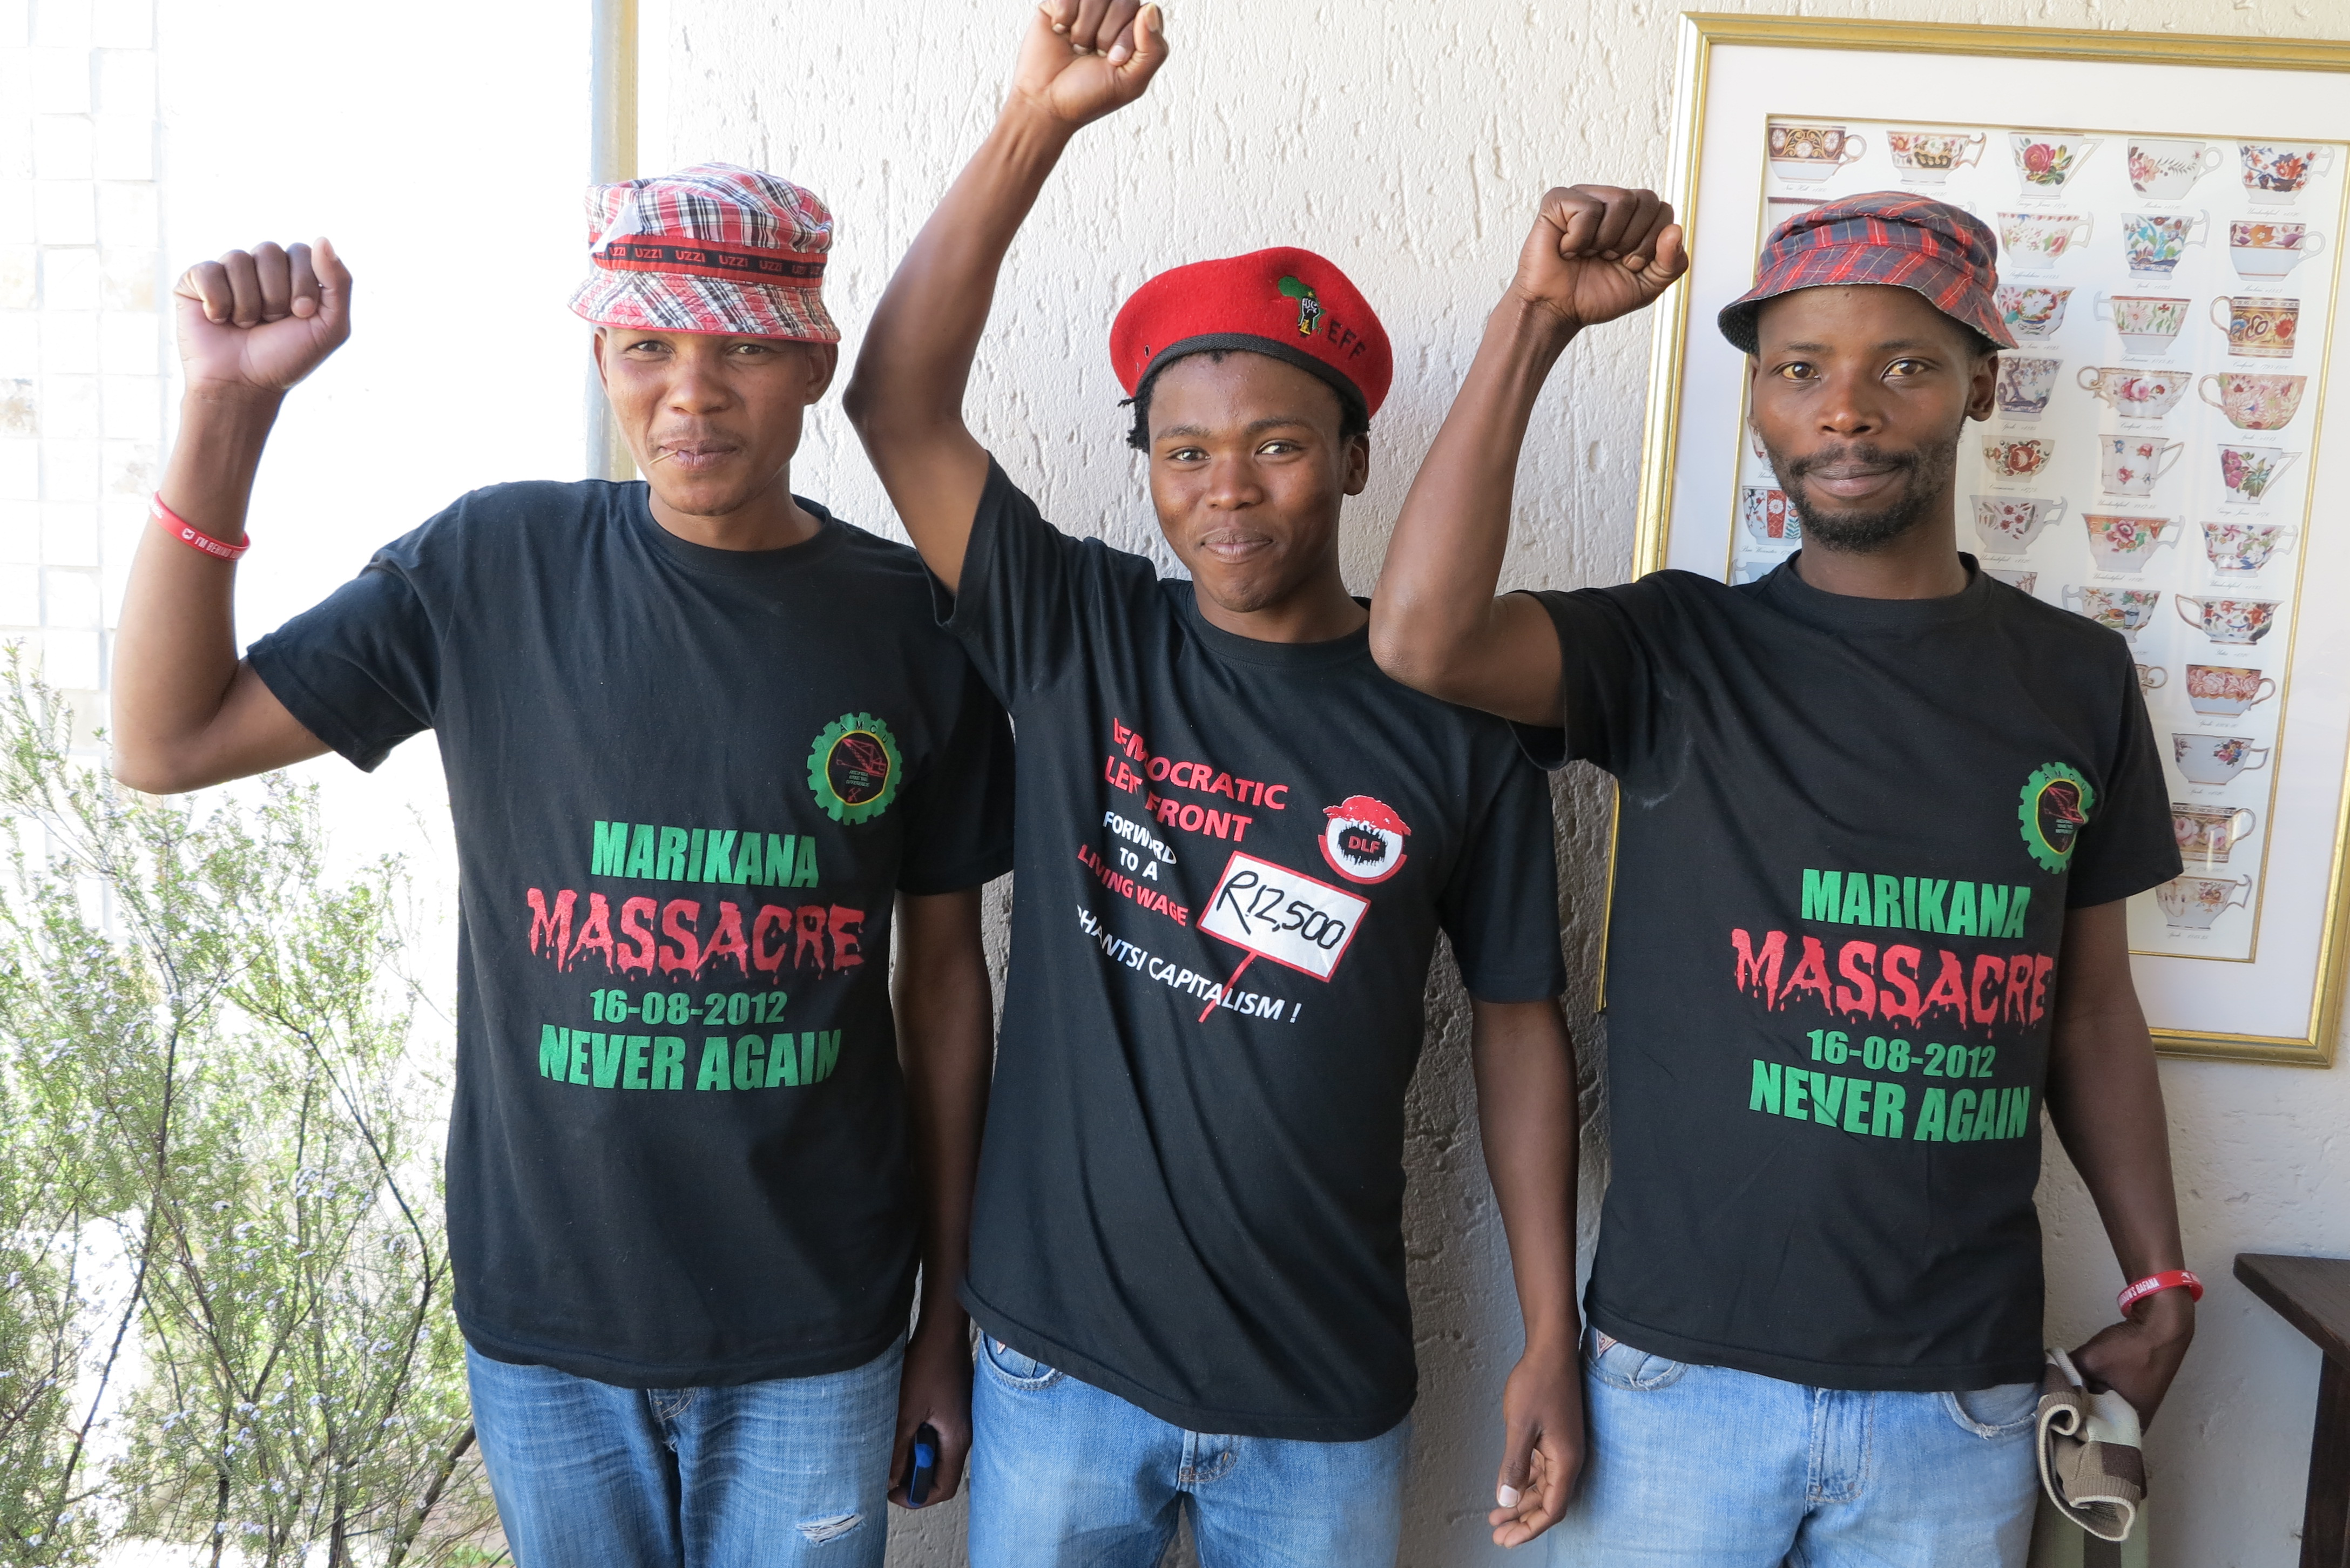 Arbeidere som overlevde massakren i Marikana. Foto: Christina Johnsen/Norsk Folkehjelp